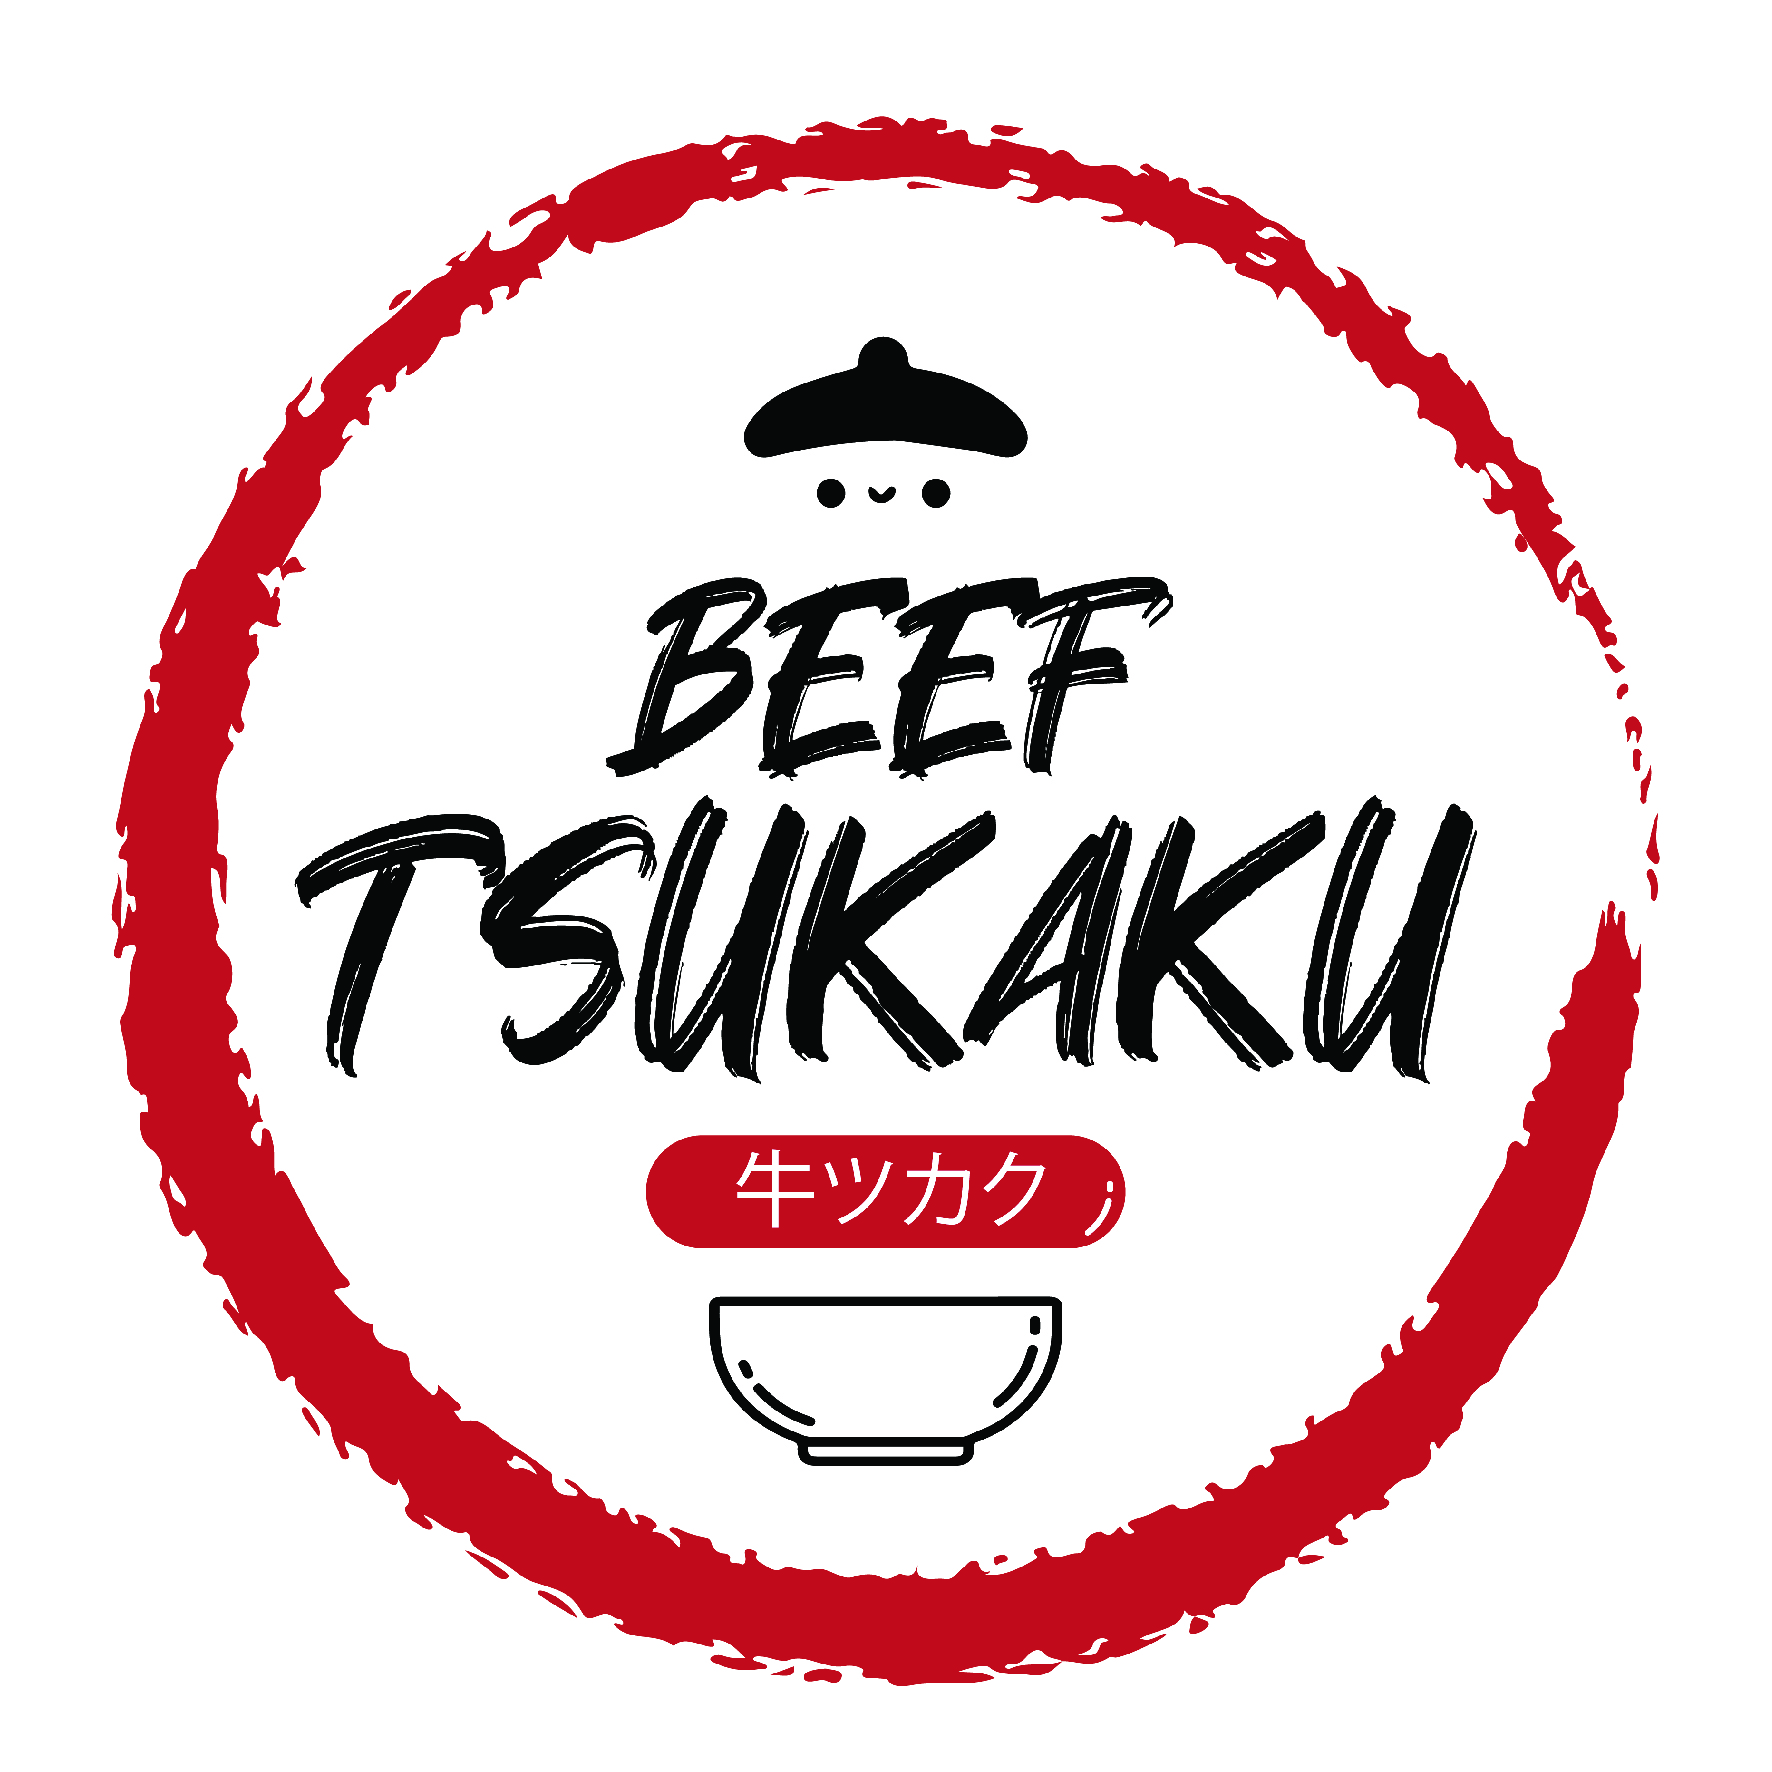 Beef Tsukaku